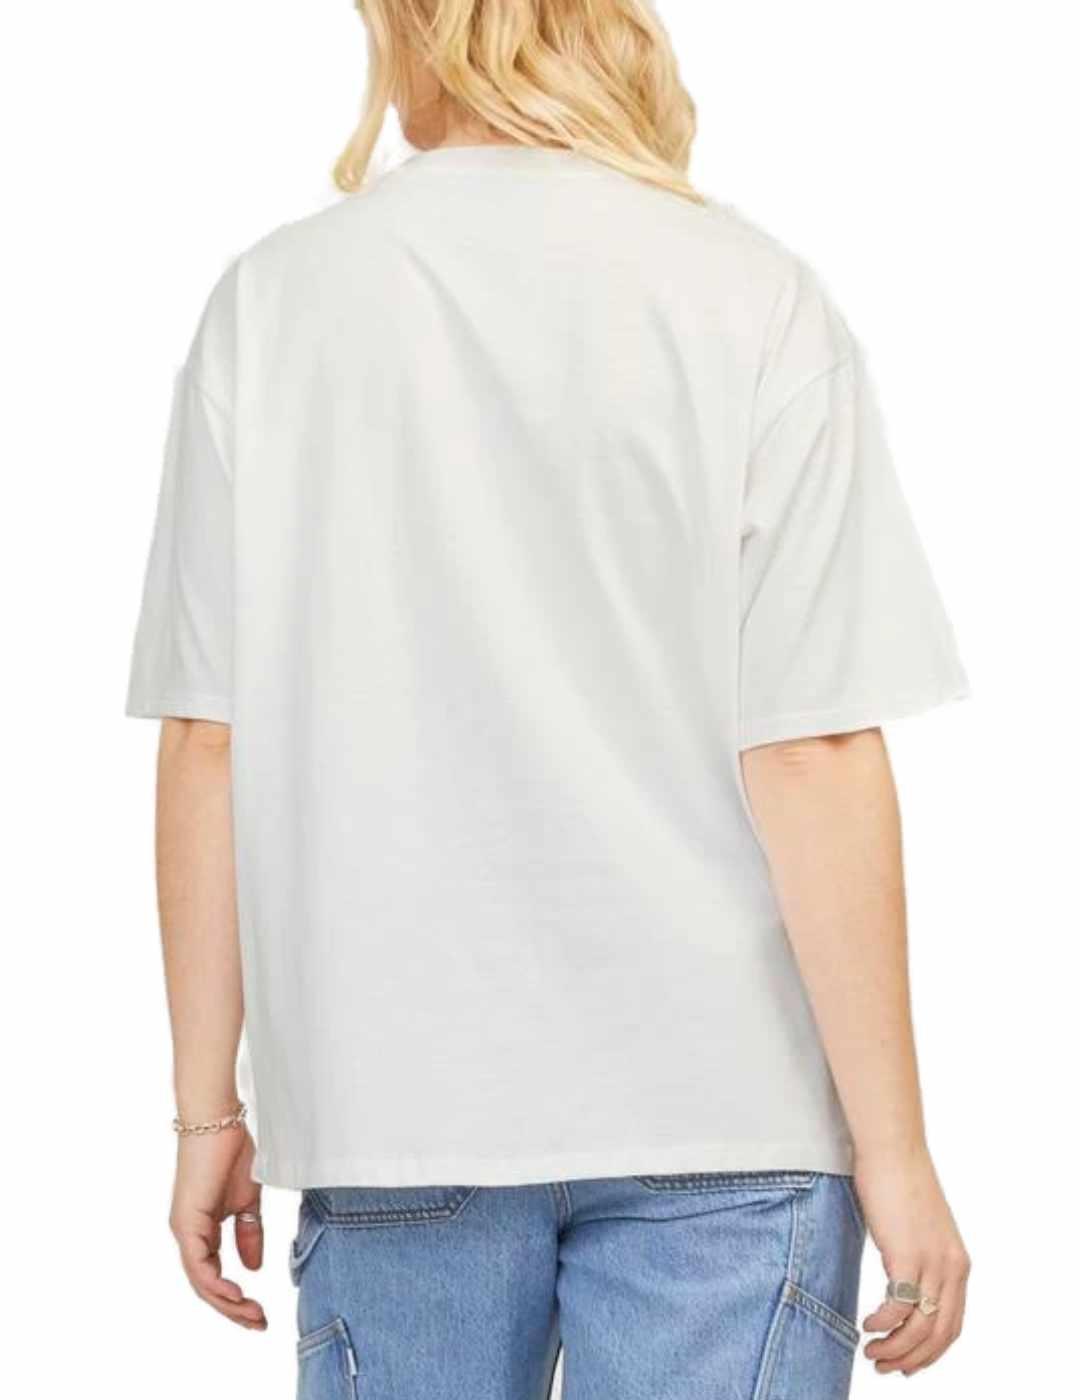 Camiseta JJXX Paige blanca manga 3/4 para mujer